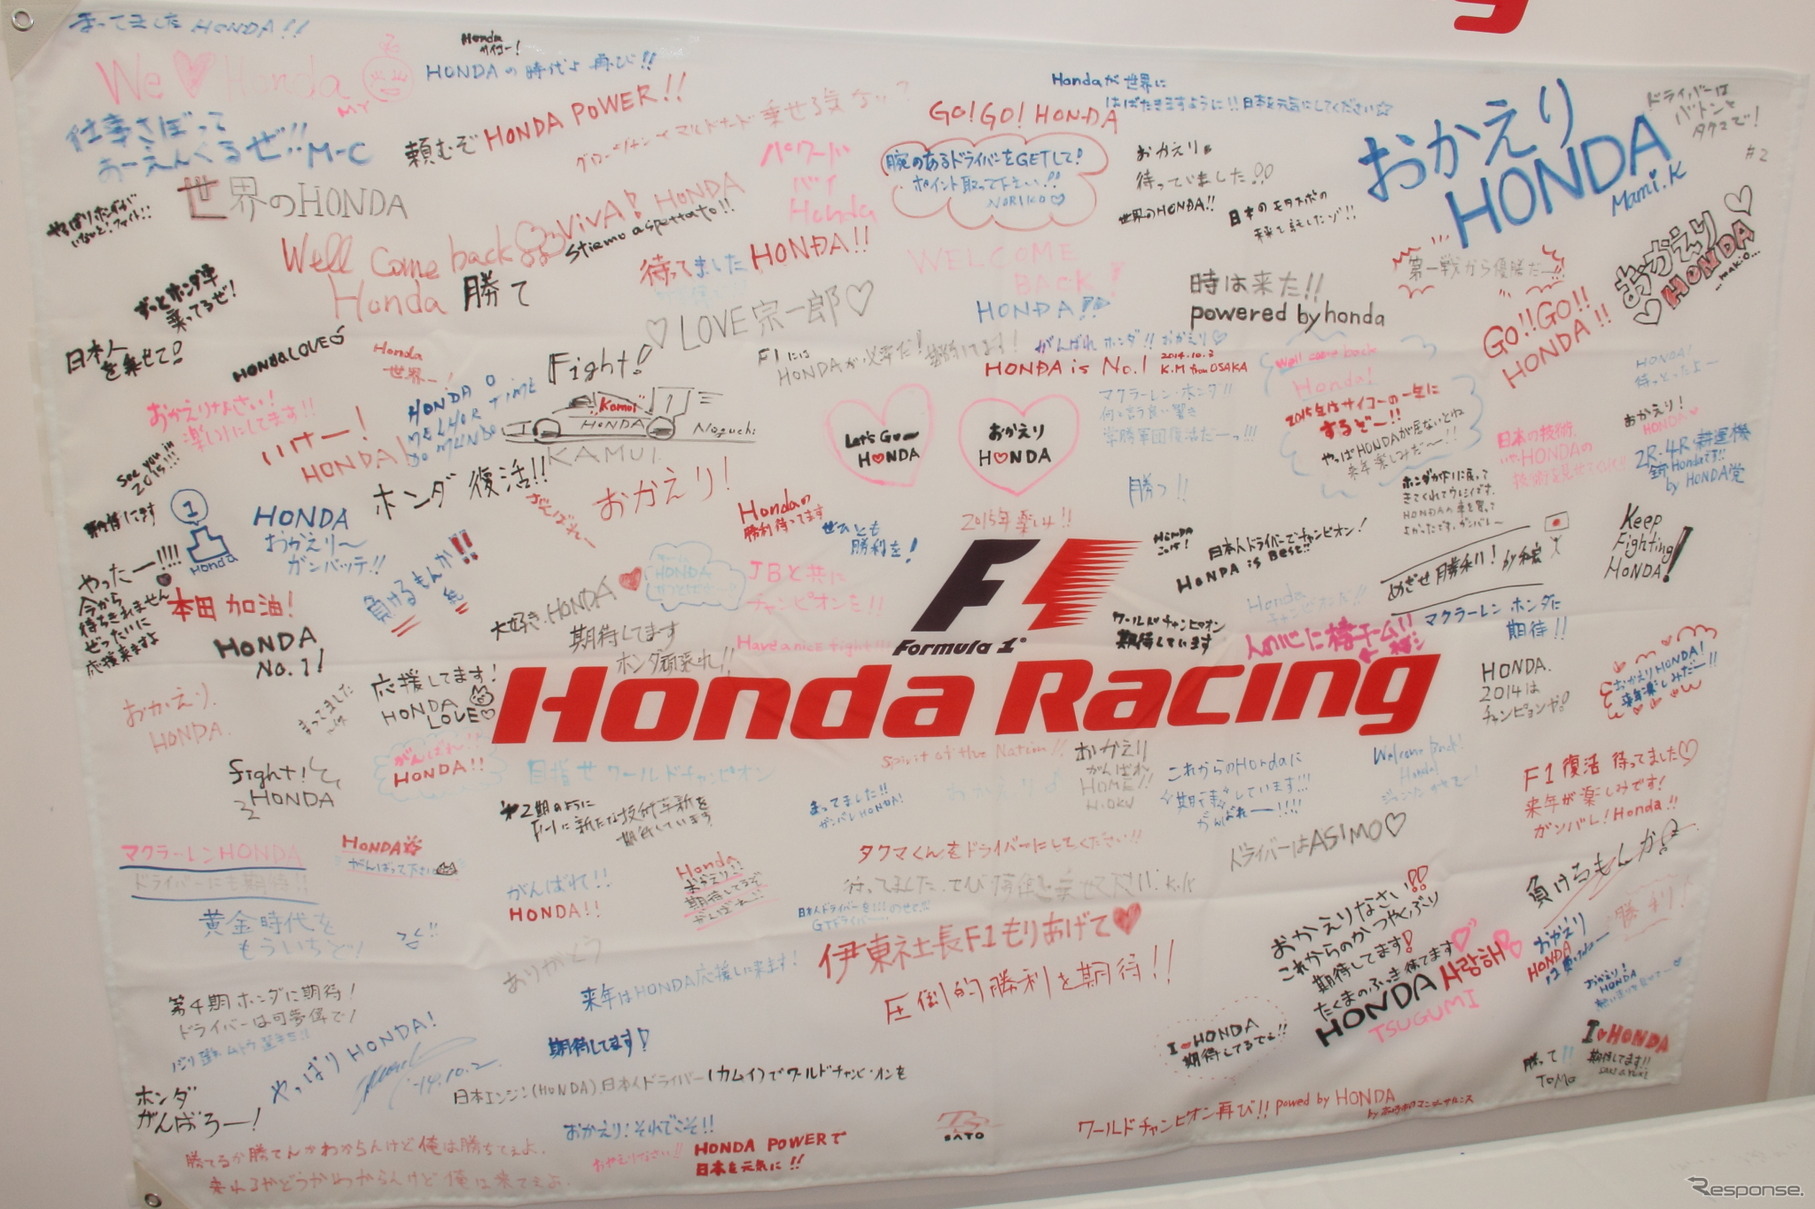 モータースポーツジャパン2014ホンダブース内の寄せ書きメッセージ